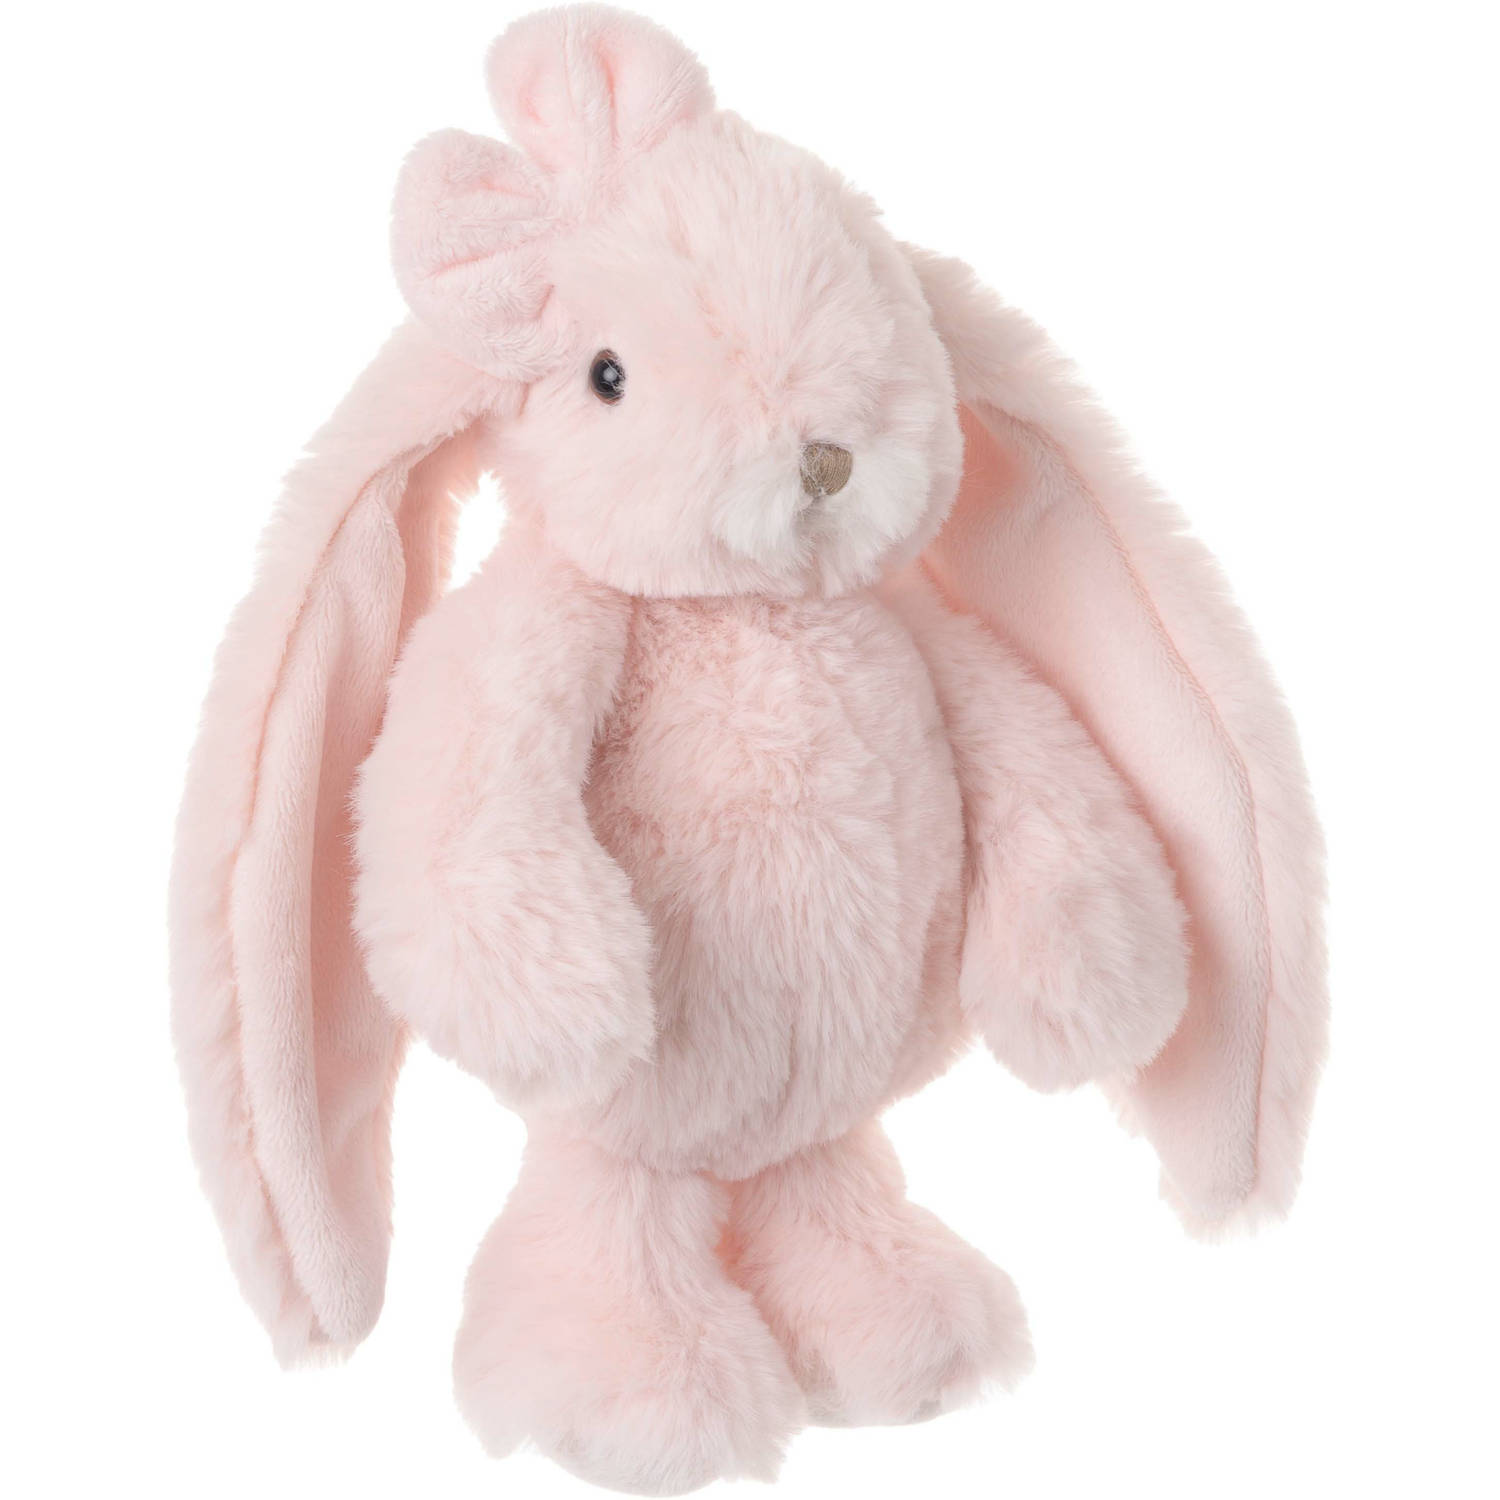 Bukowski pluche konijn knuffeldier - lichtroze - staand - 22 cm - Luxe kwaliteit knuffels